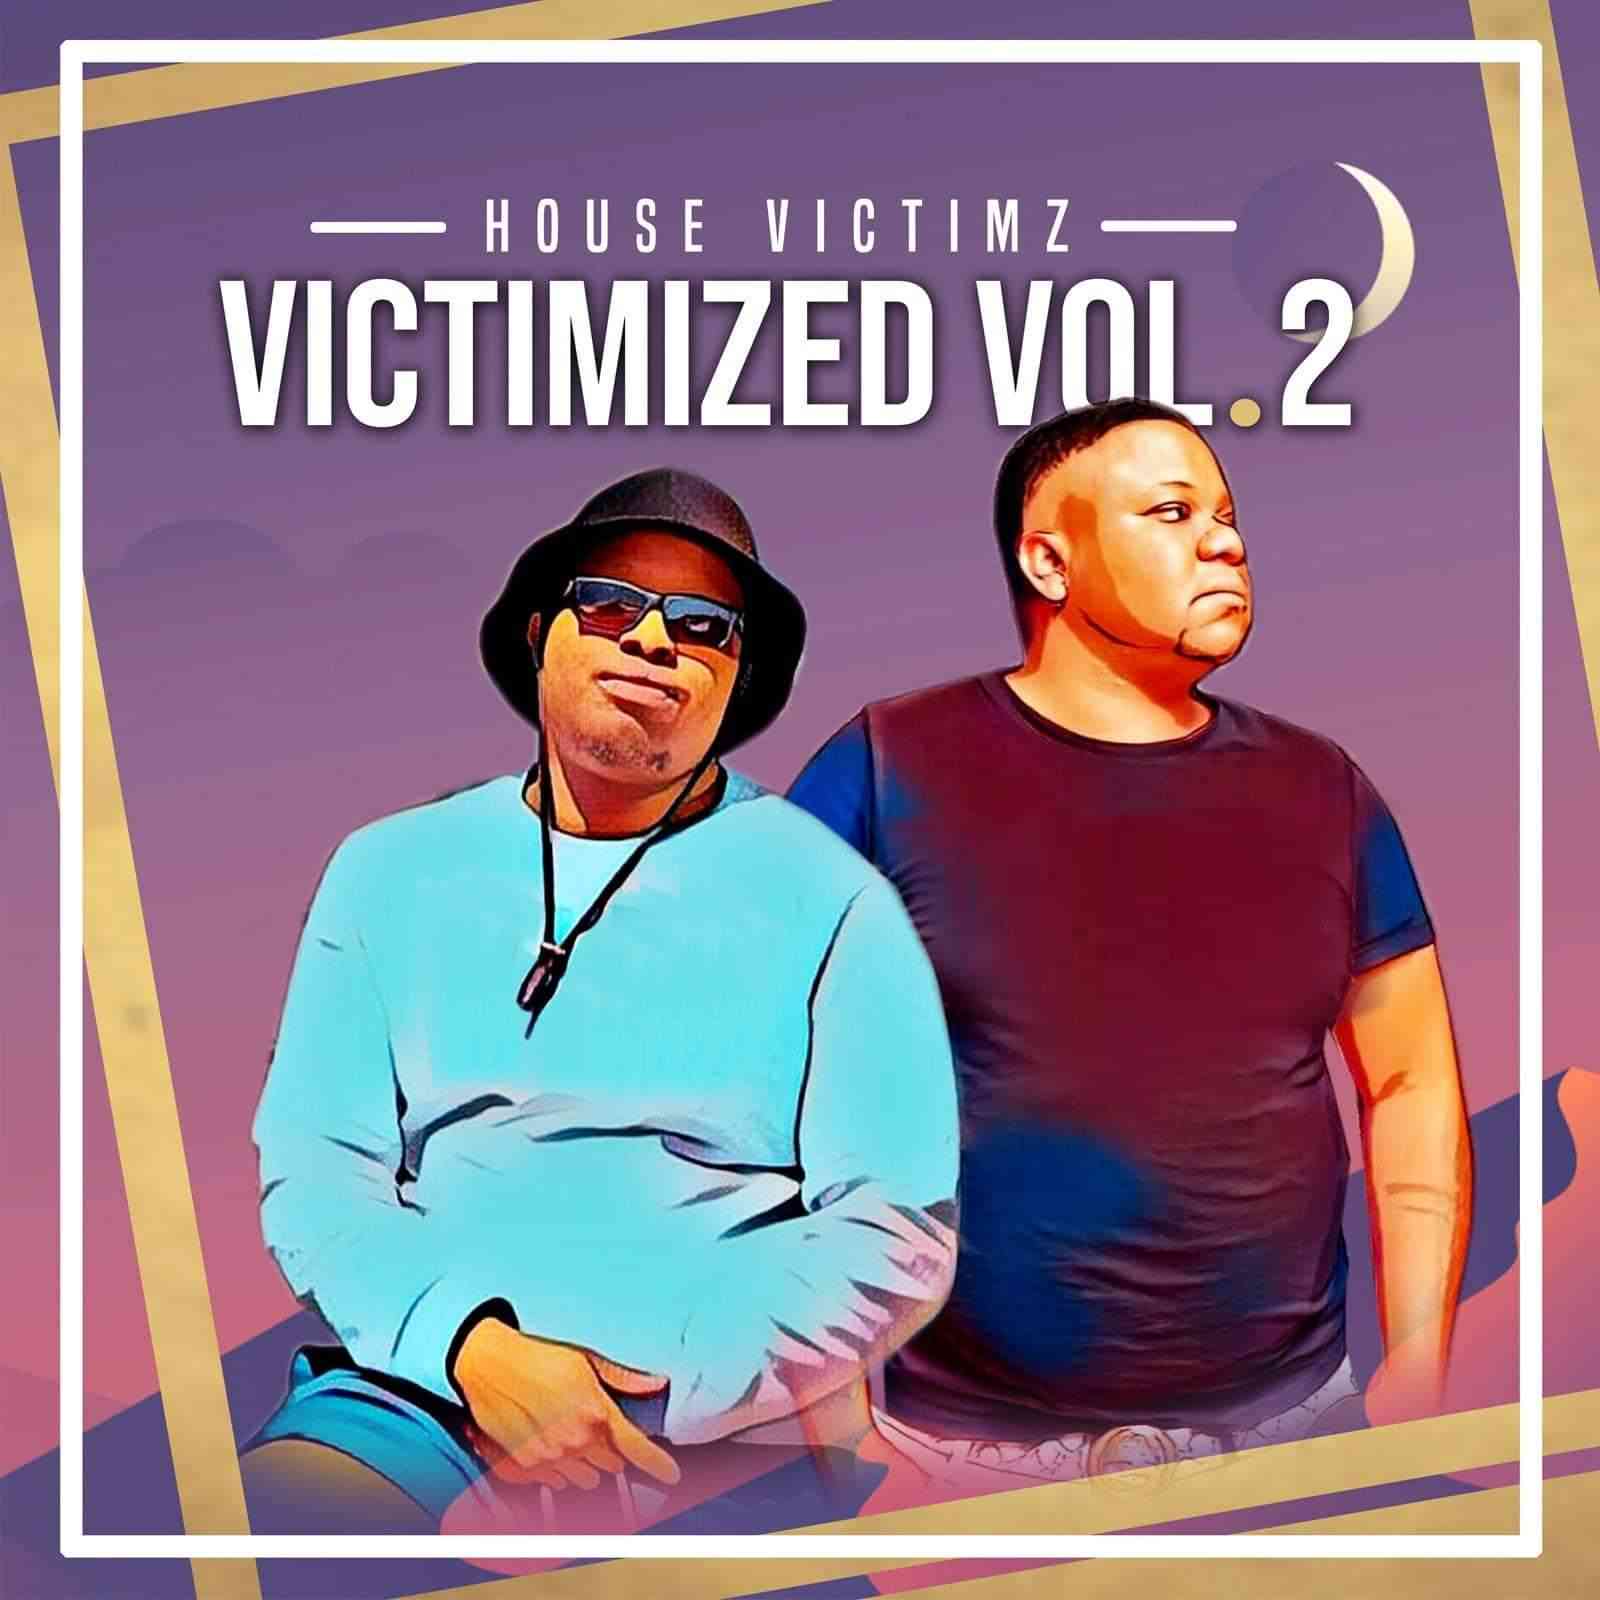 House Victimz Make A Comeback With Victimized, Vol. 2 Album